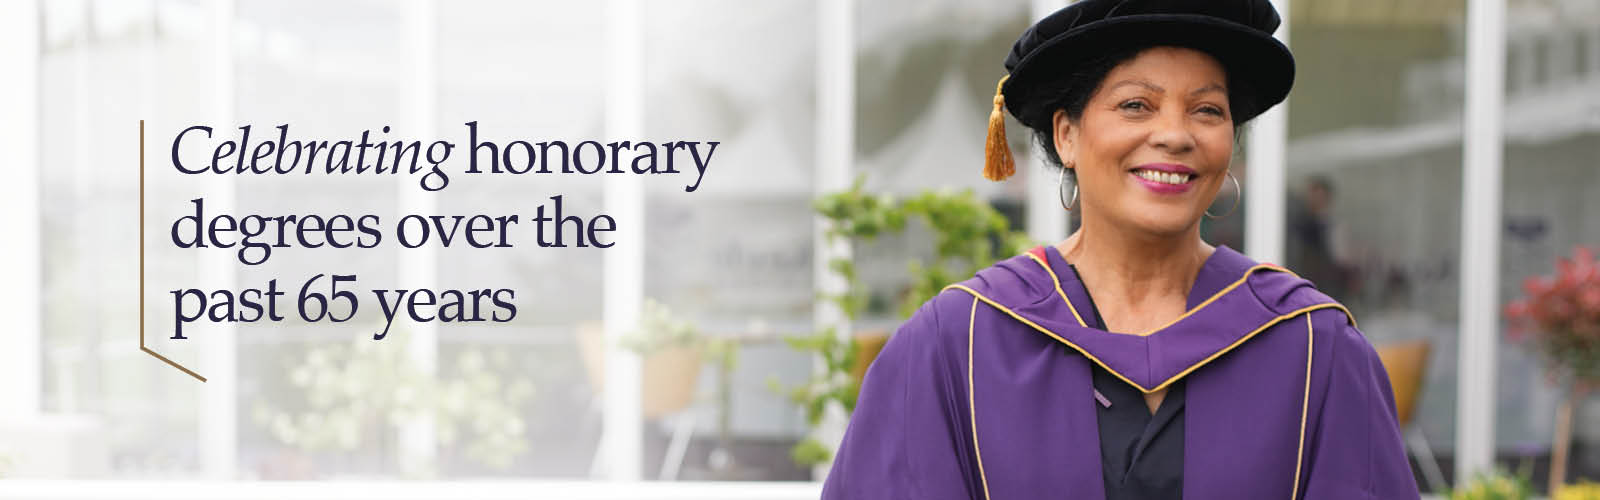 Honorary degrees website banner